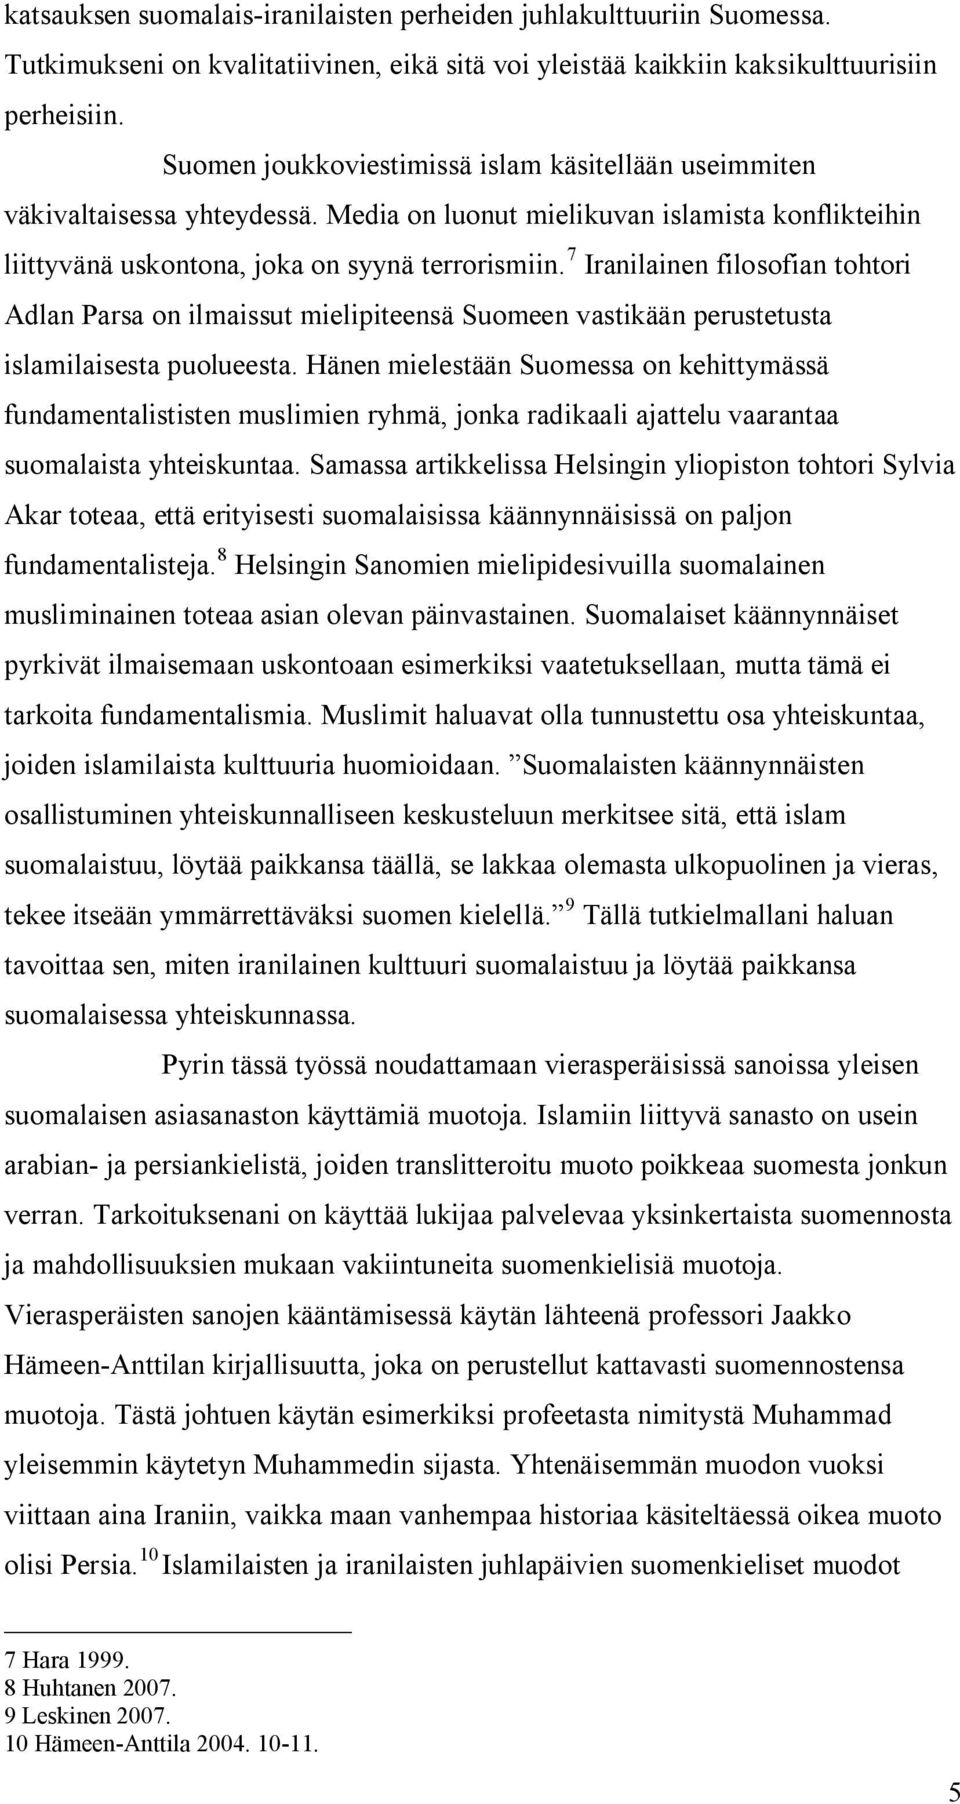 7 Iranilainen filosofian tohtori Adlan Parsa on ilmaissut mielipiteensä Suomeen vastikään perustetusta islamilaisesta puolueesta.